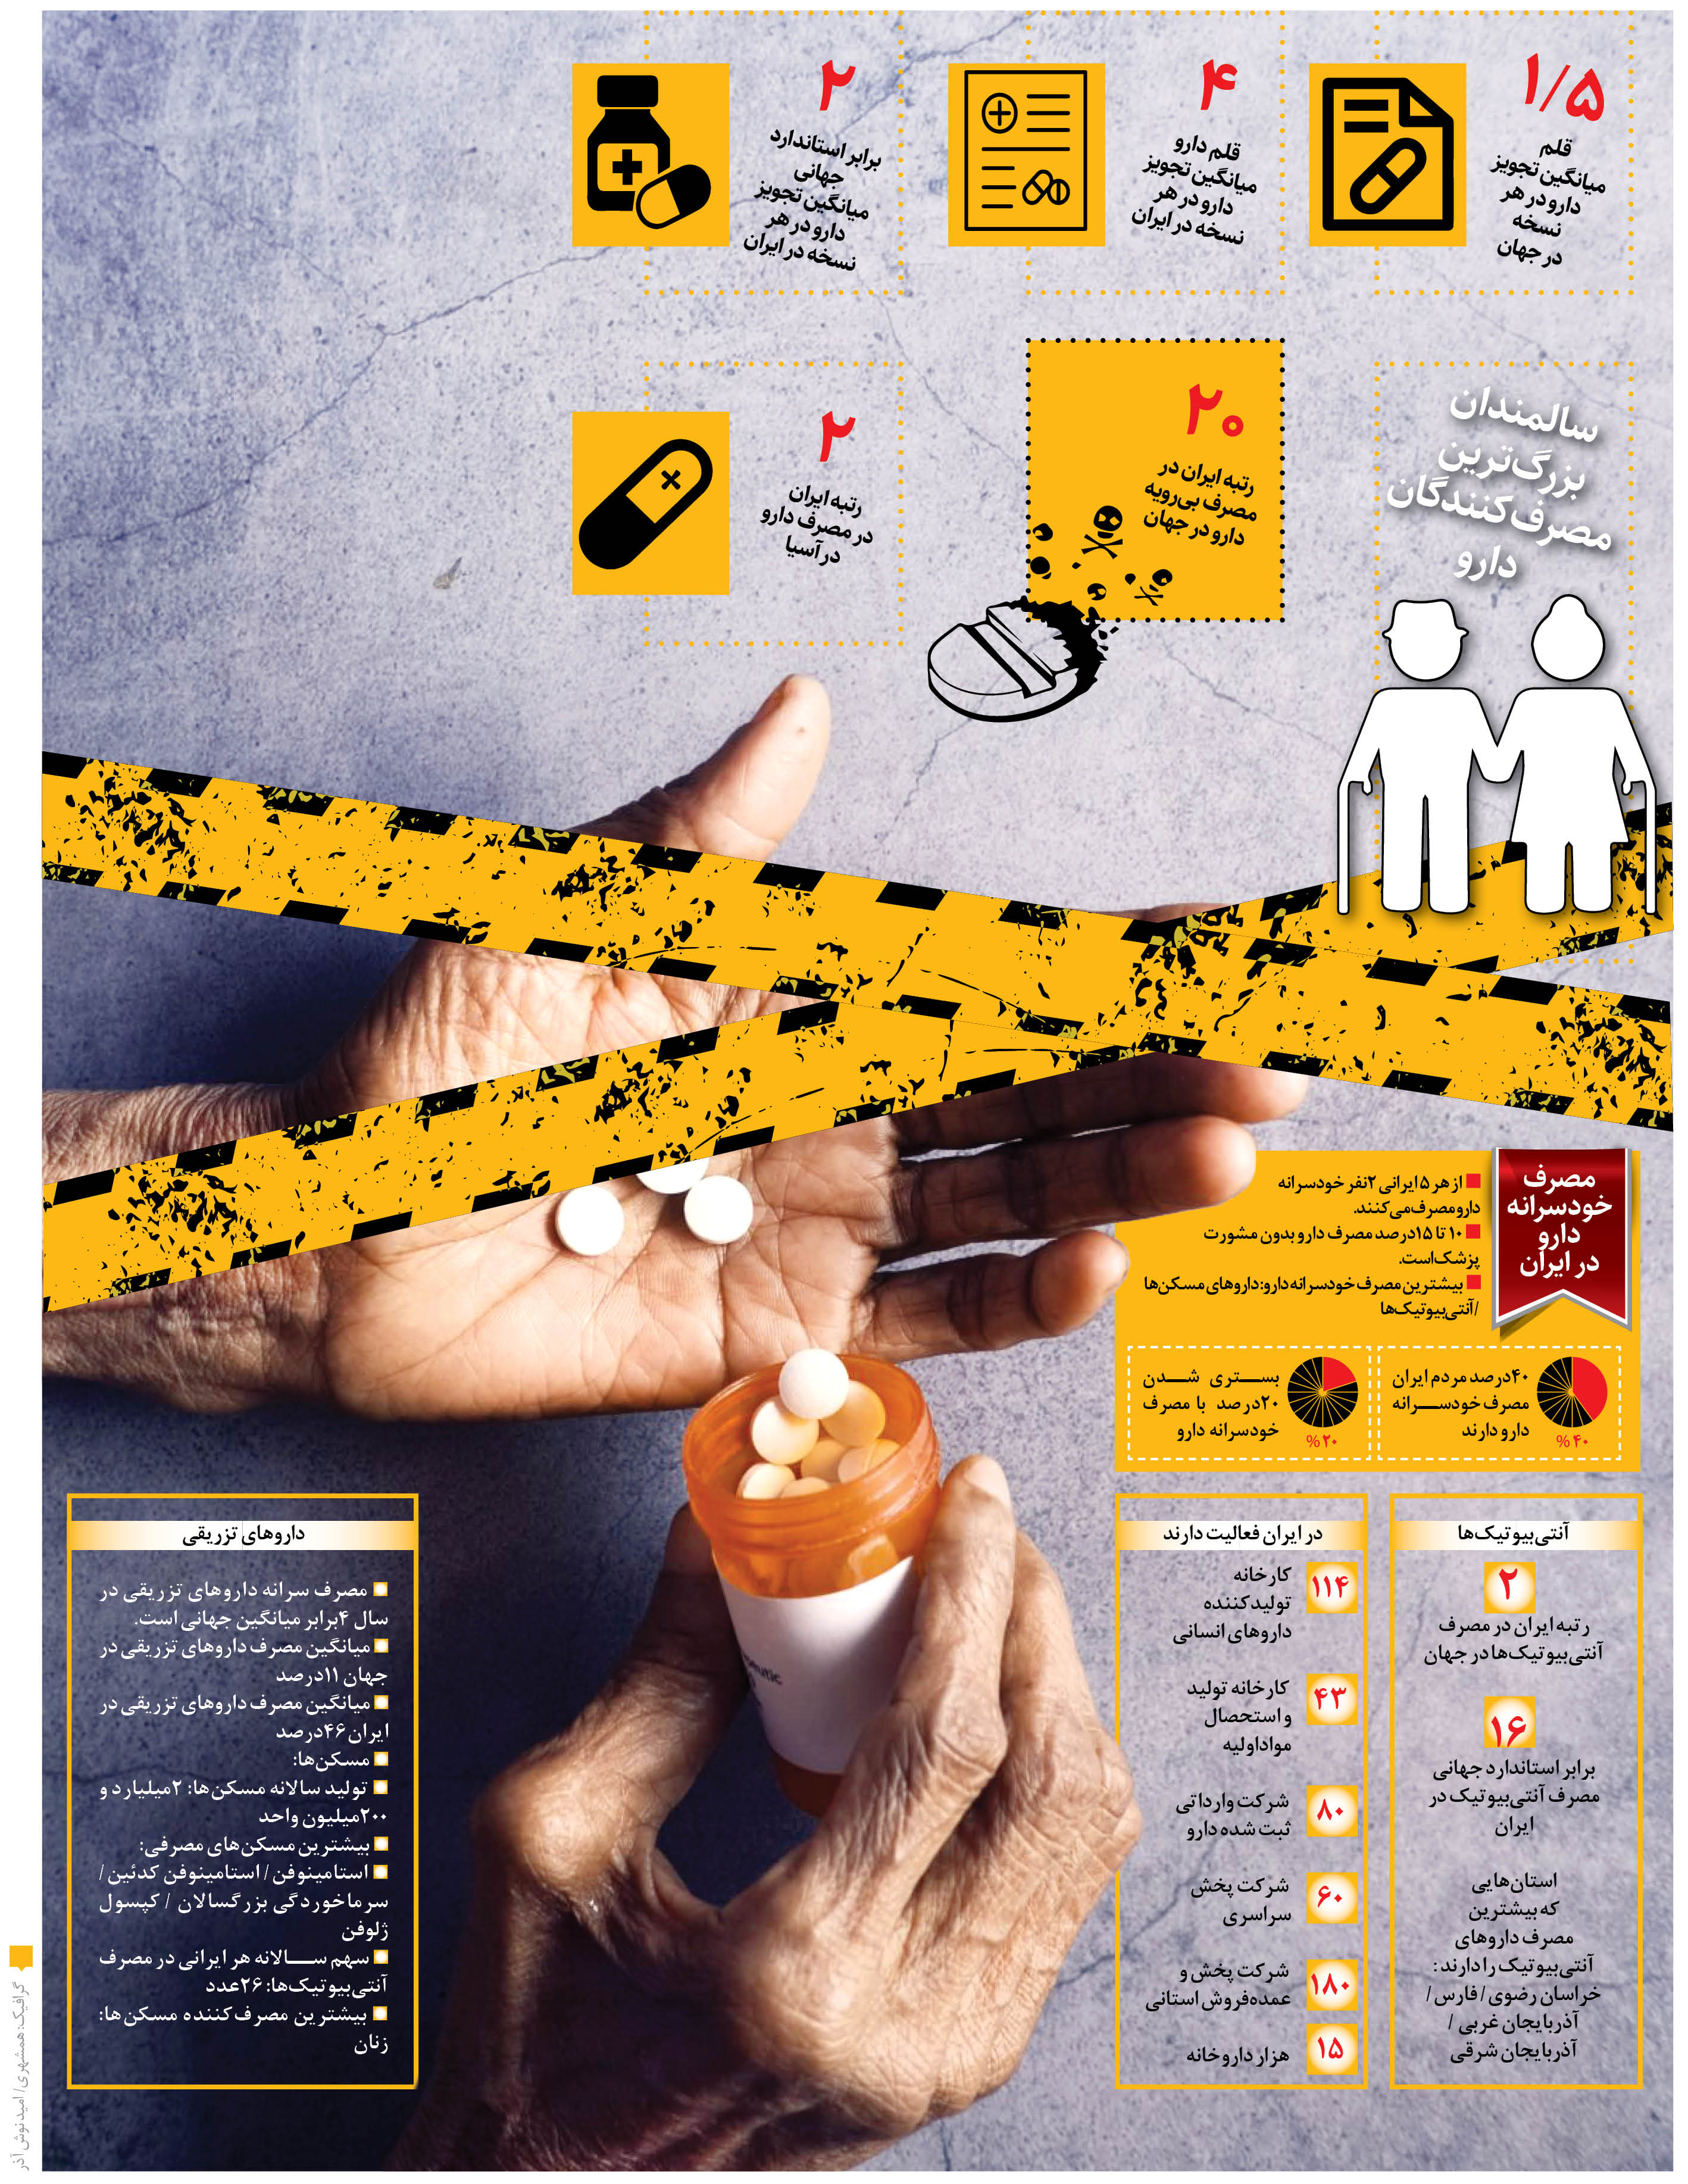 بیشترین دارویی که خودسرانه در ایران مصرف می شوند